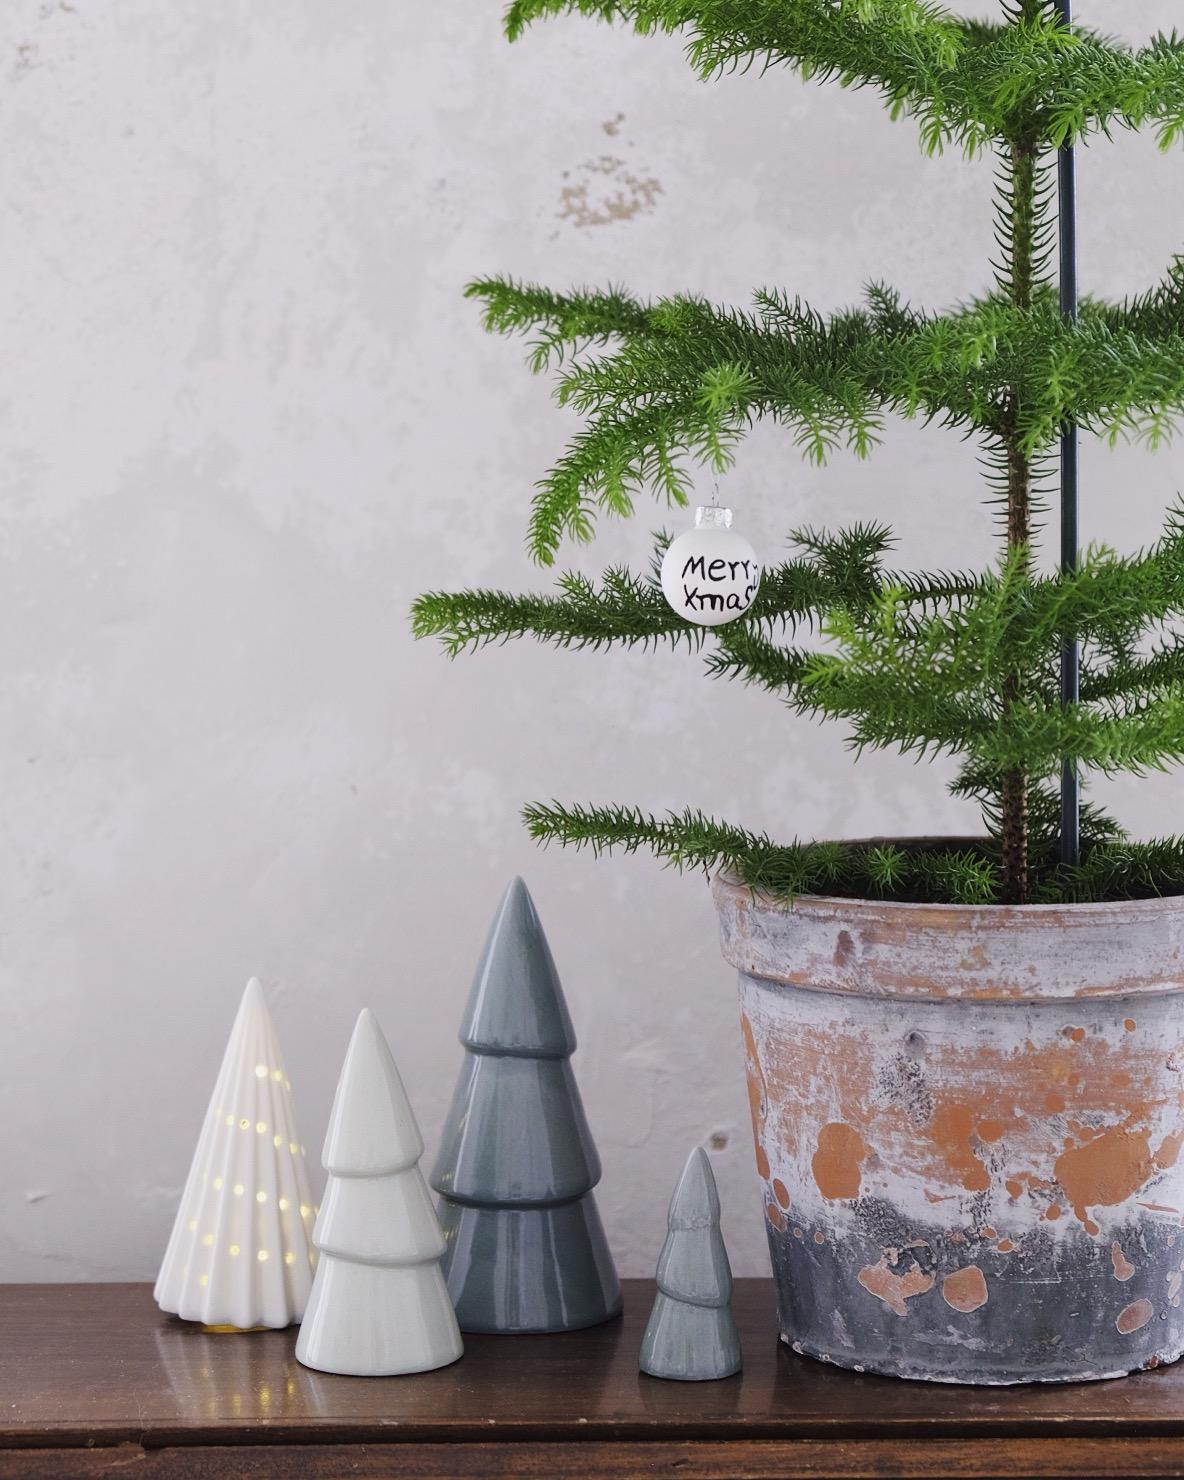 Kleiner Nadelwald 🌲
#xmasdeko #weihnachtsdeko #living #interior #skandistyle #weihnachten #zimmertanne #weihnachtsbaum 